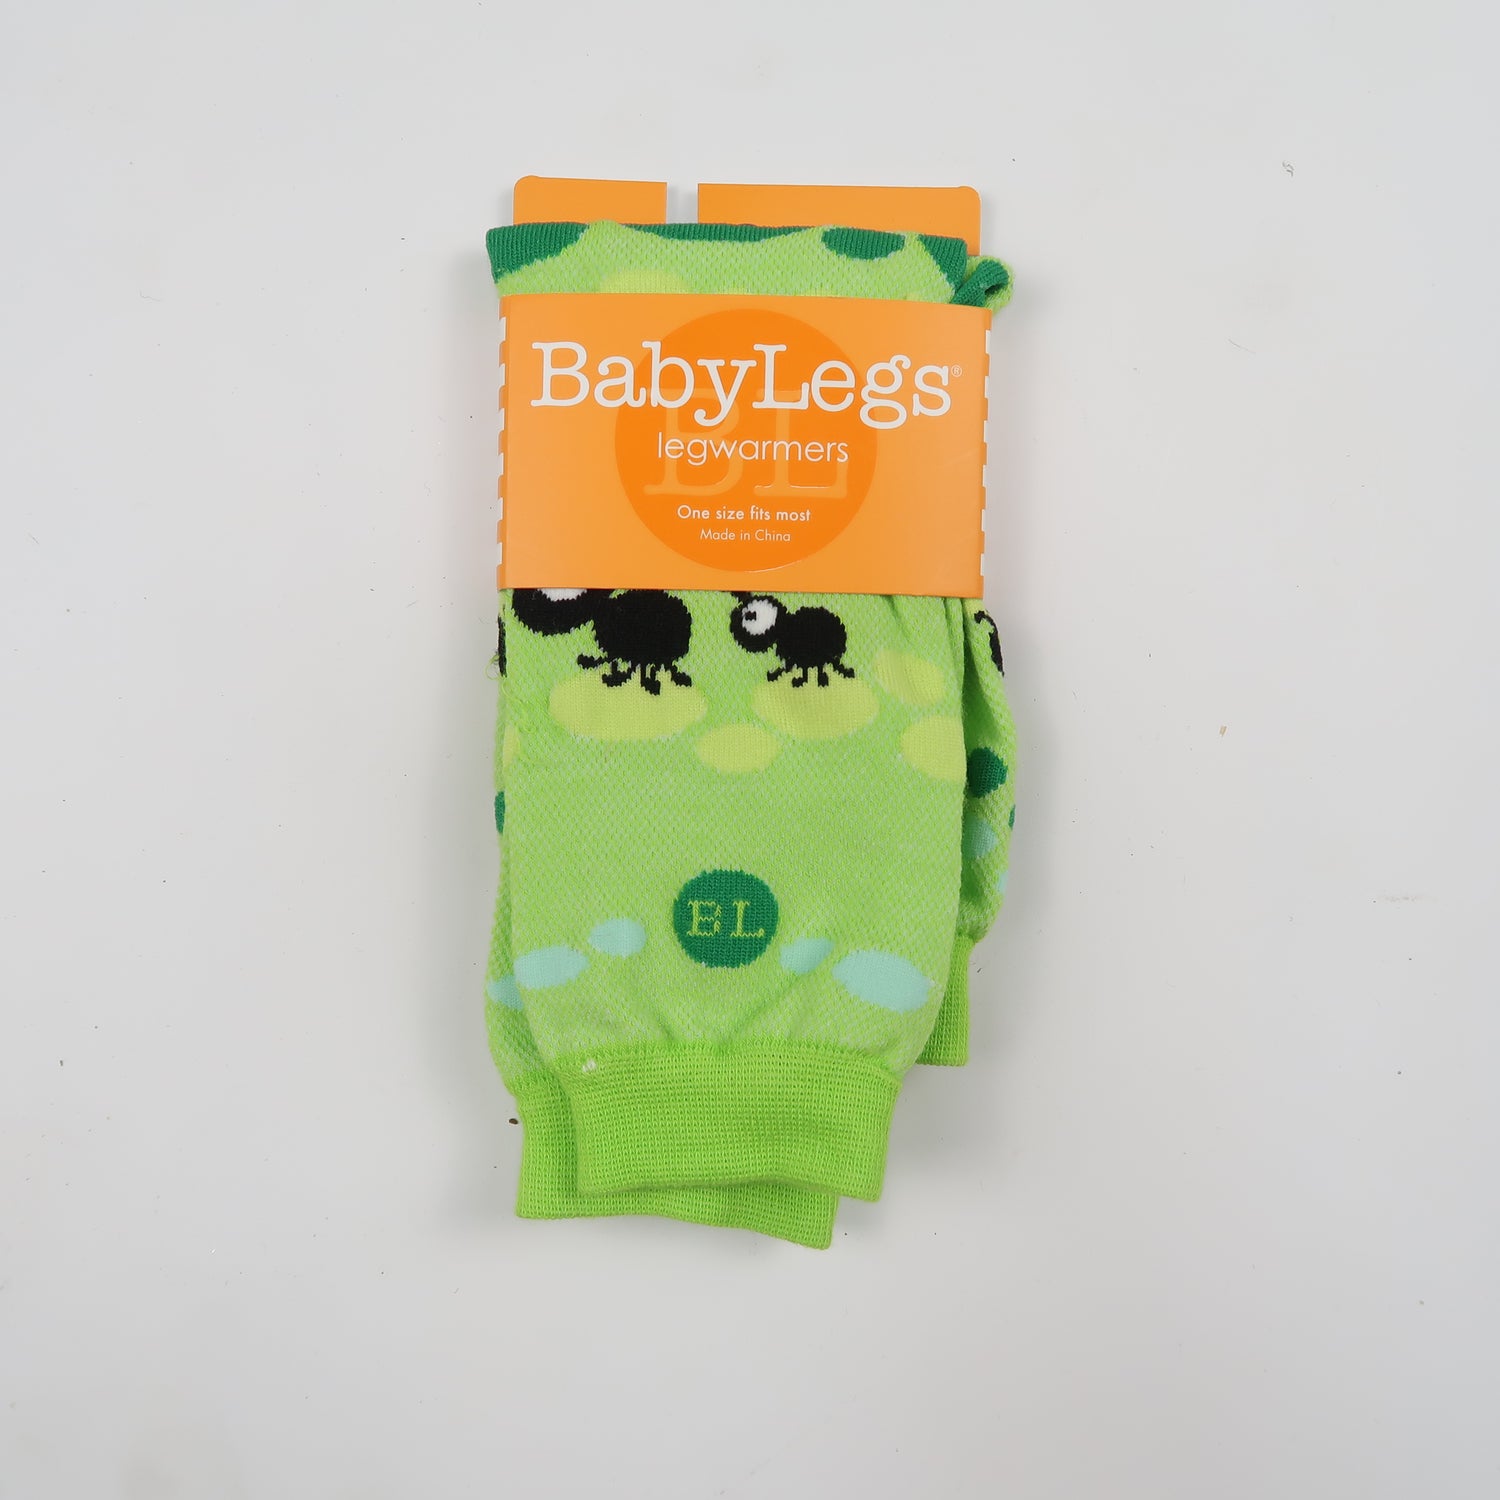 Baby Legs - Legwarmers (OS)